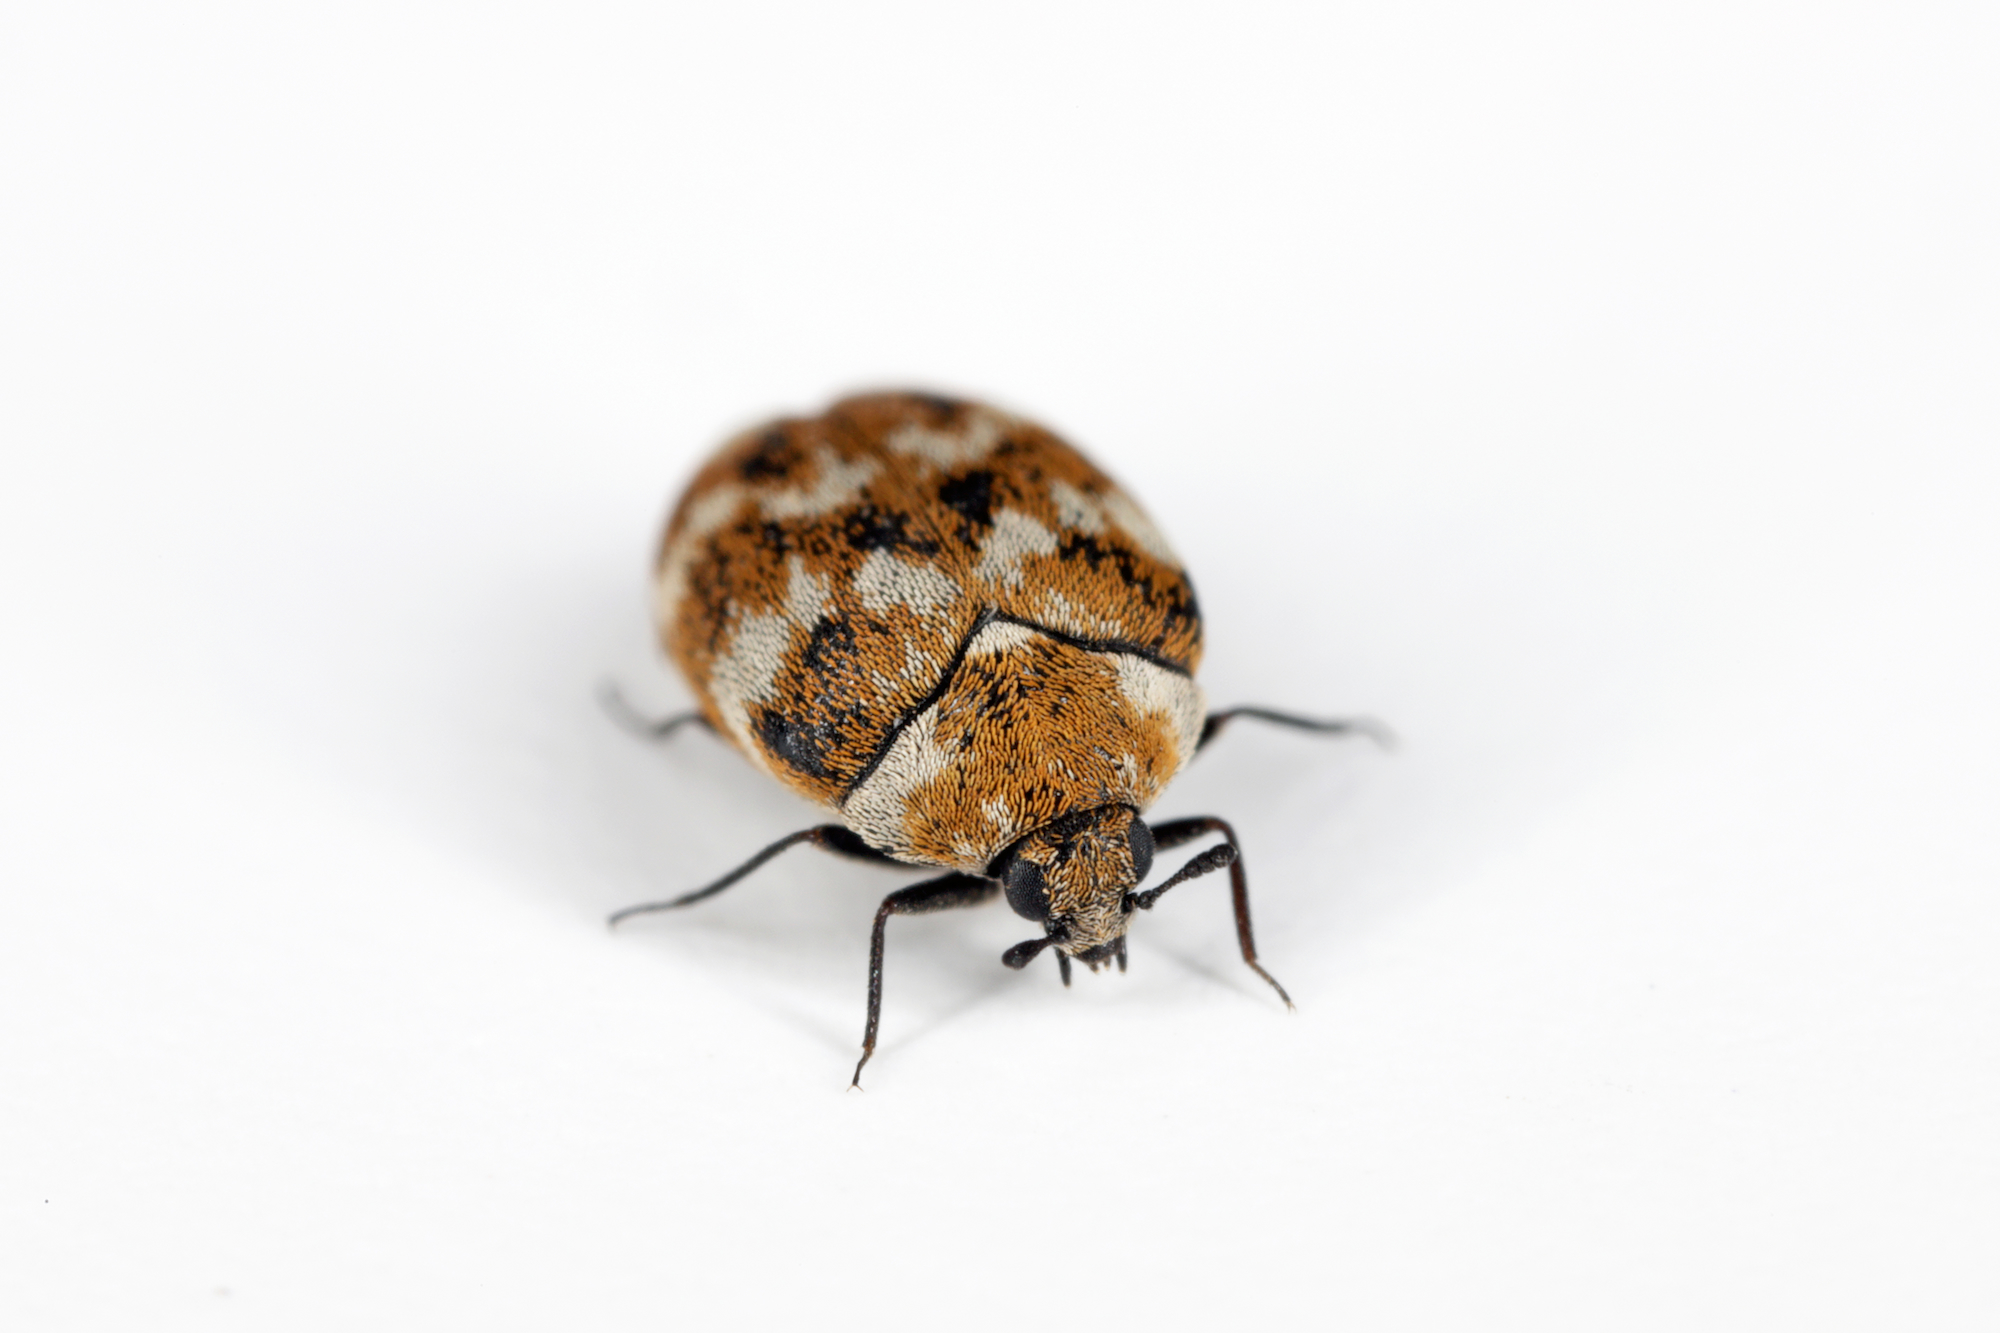 Black Carpet Beetle Pheromone Lures (10-Pack)